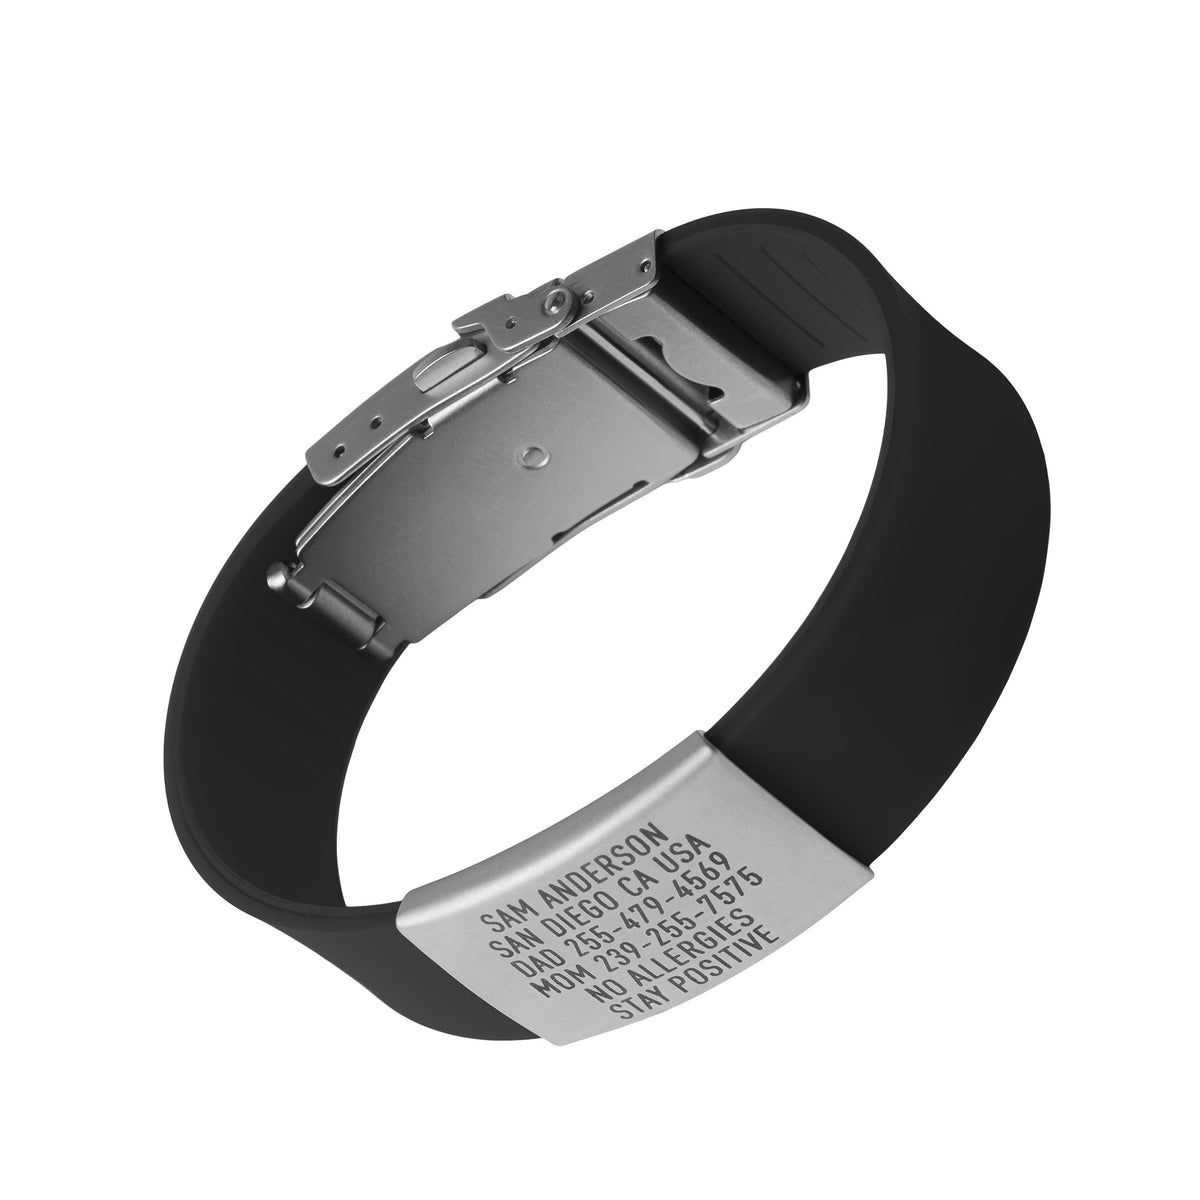 Wristband ID - Pro (Silver)